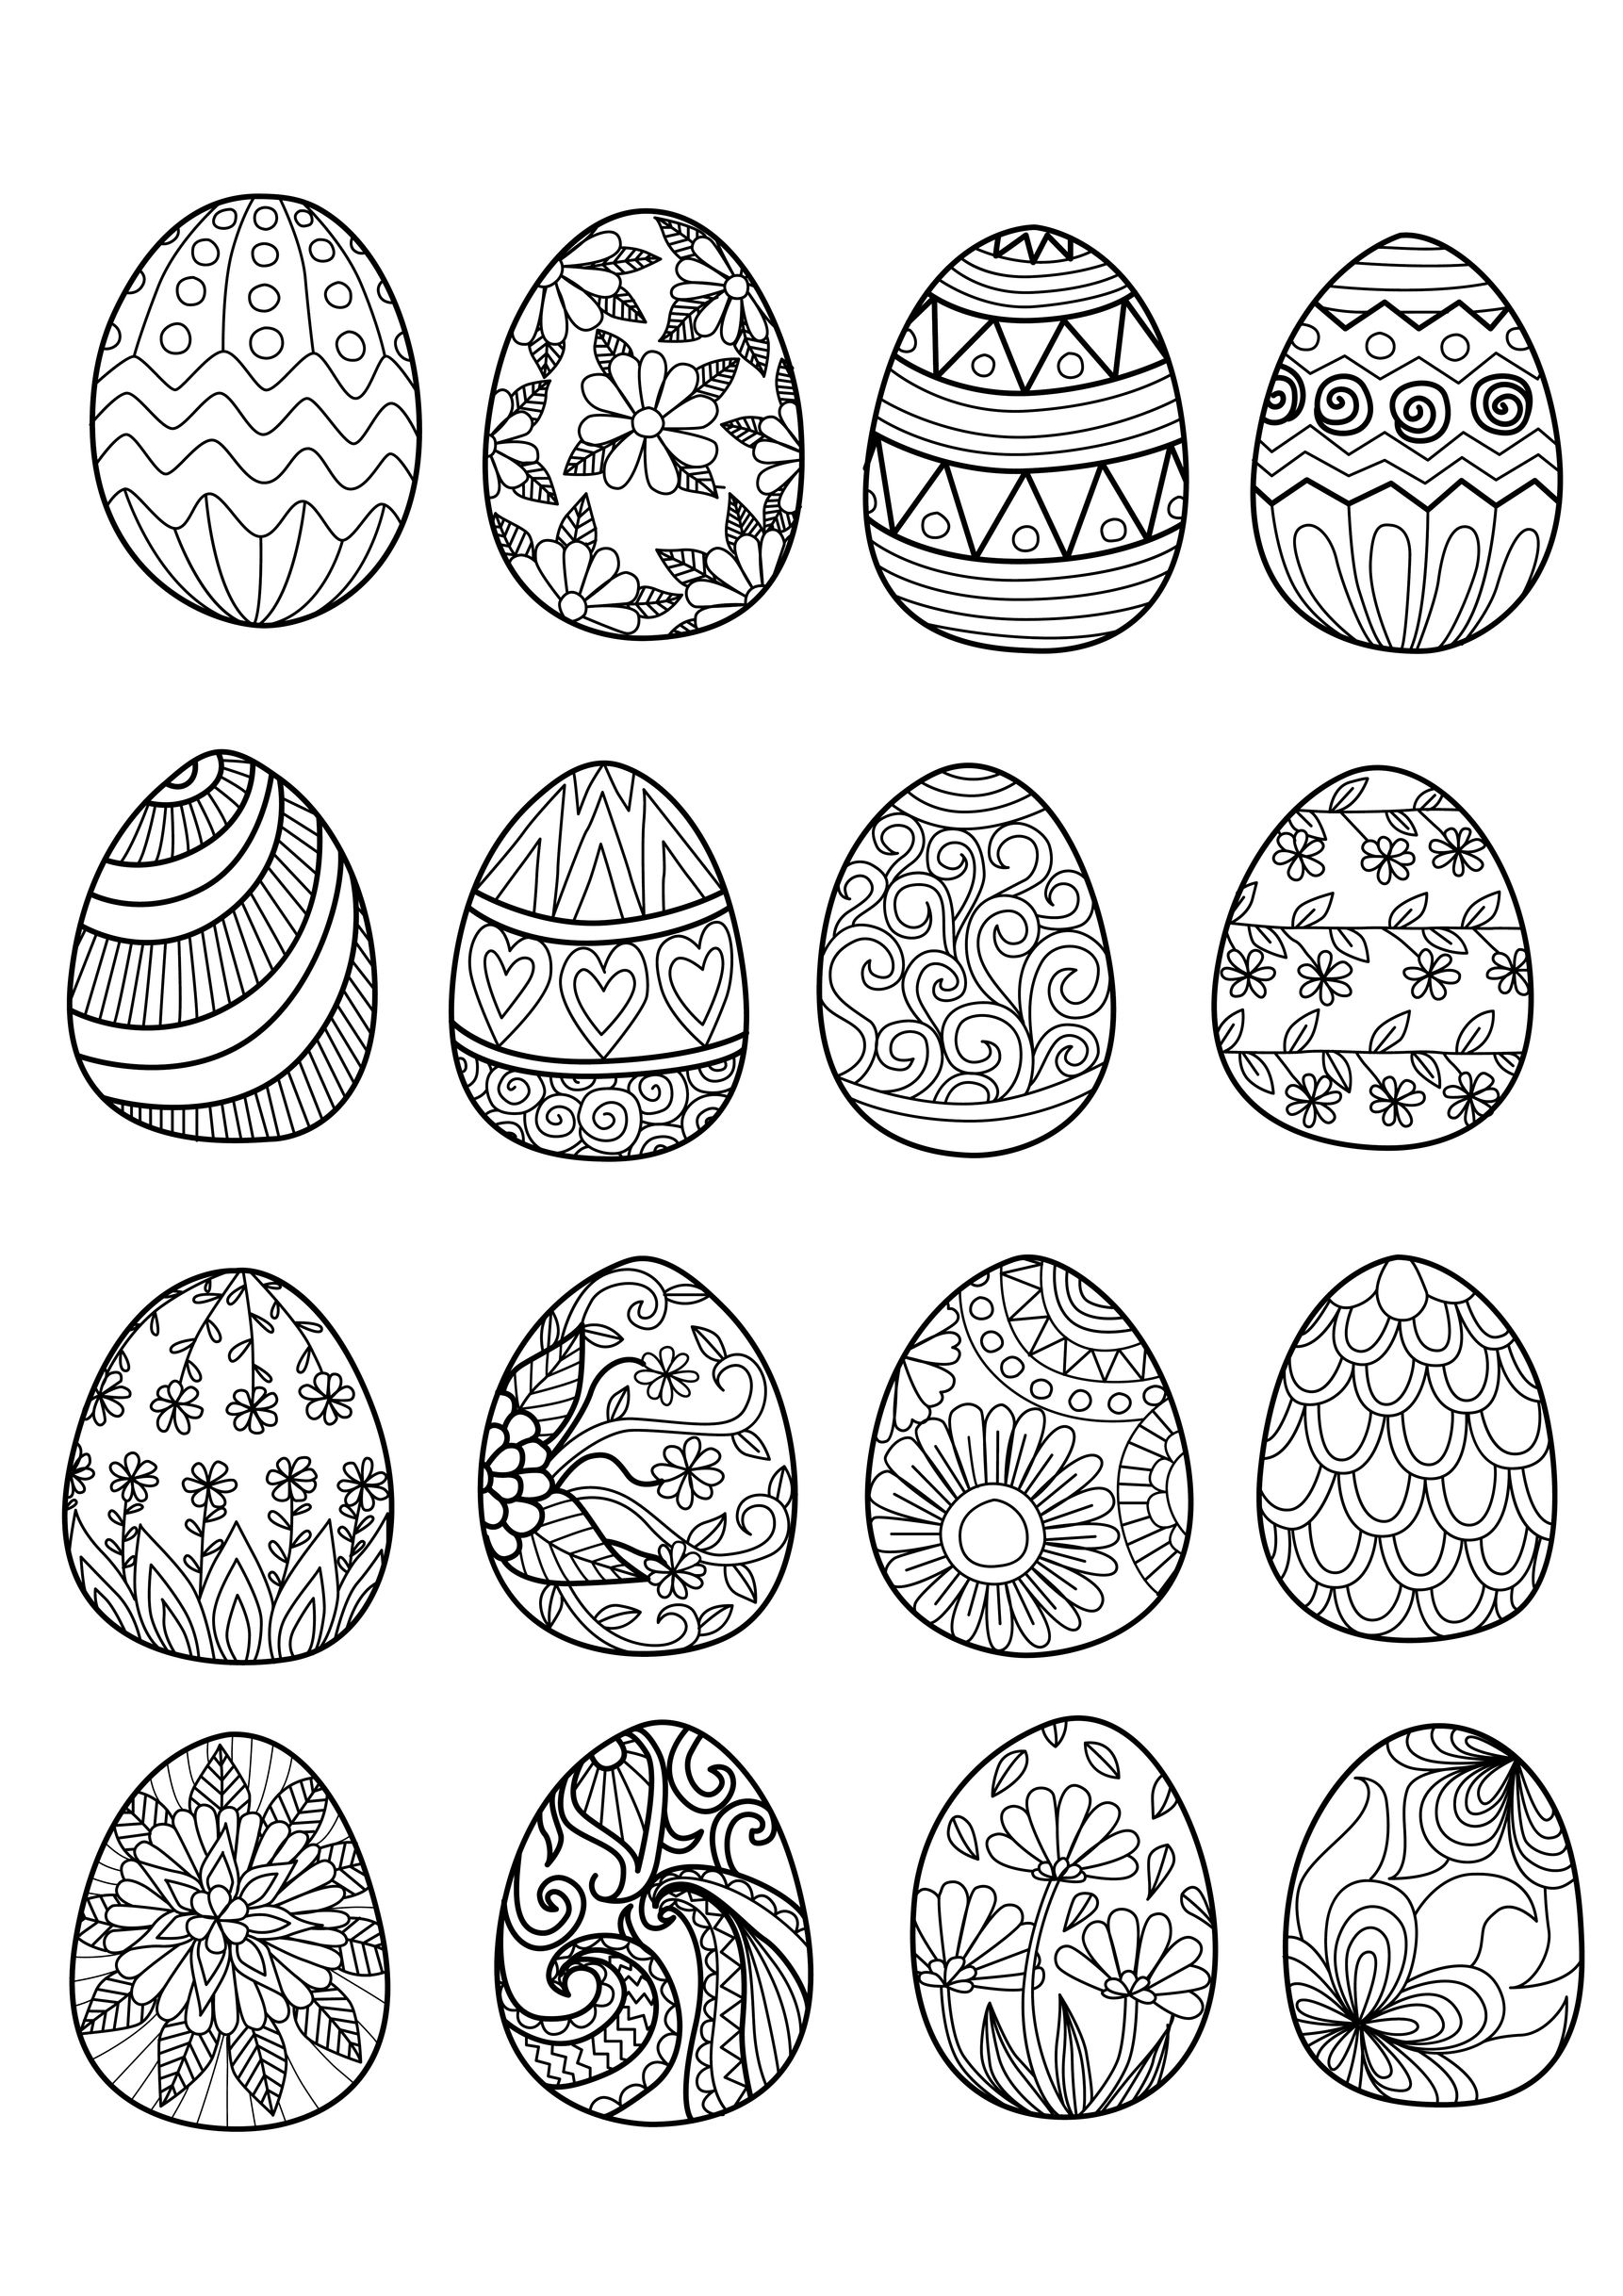 Disegni da colorare per adulti : Pasqua - 3, Artista : Bimdeedee   Fonte : 123rf